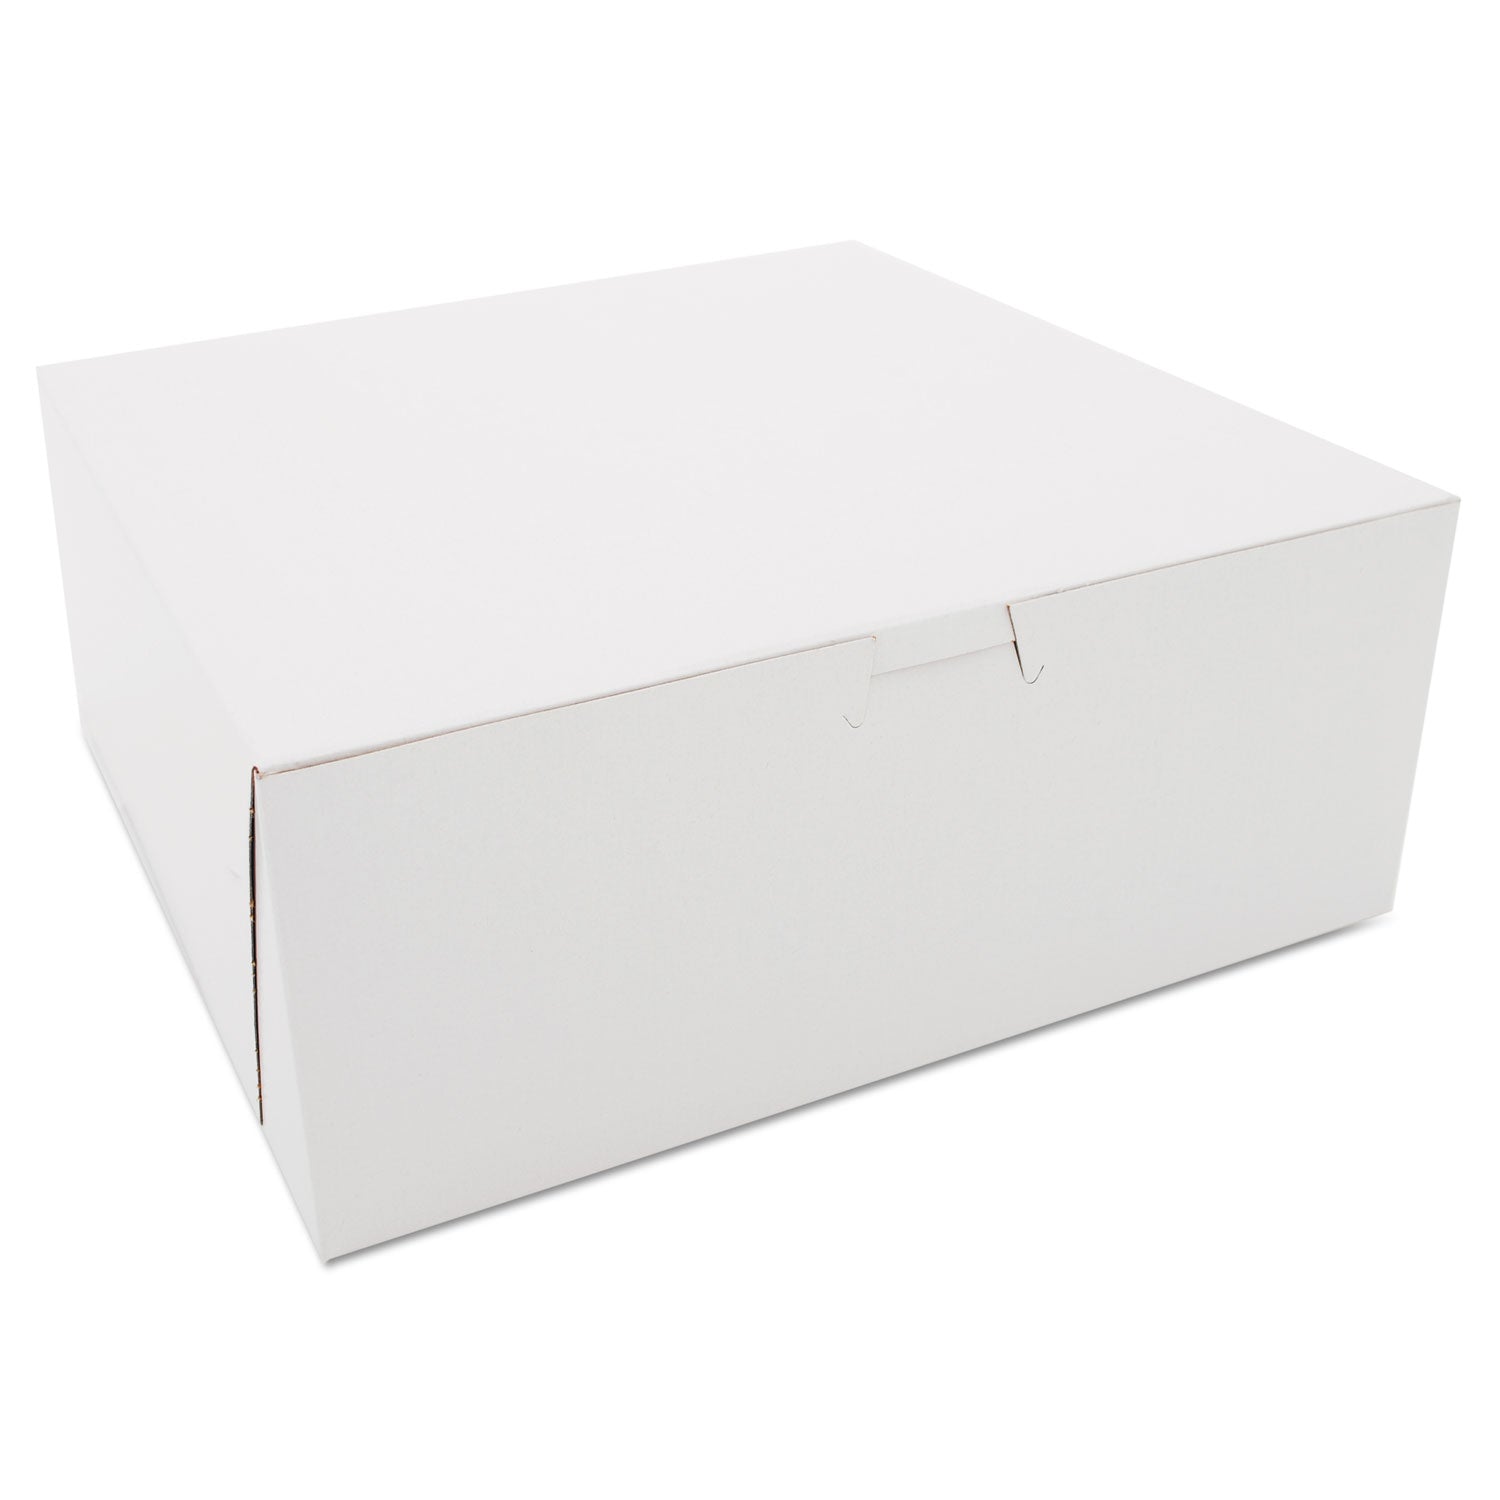 White One-Piece Non-Window Bakery Boxes, 10 x 10 x 4, White, Paper, 100/Carton - 